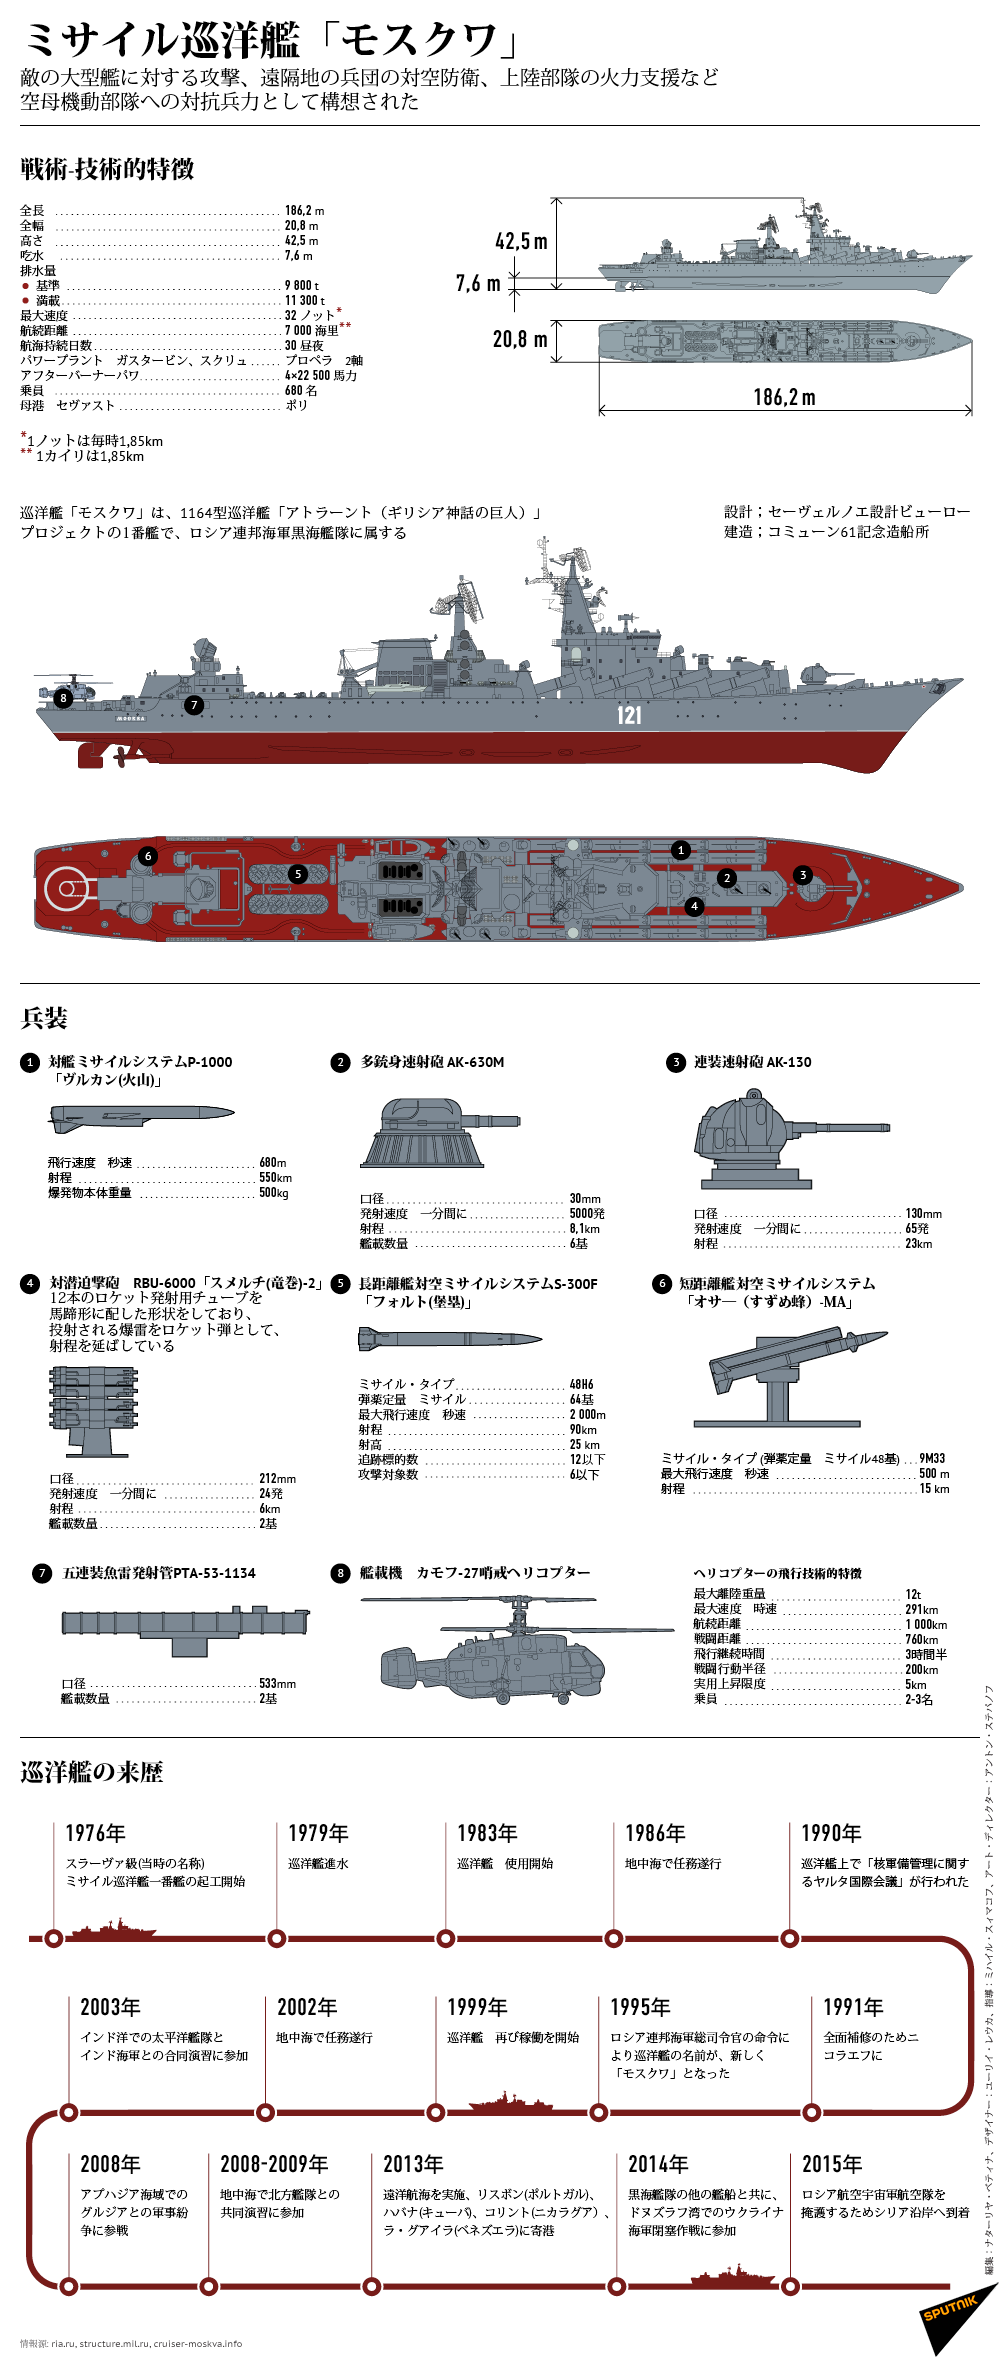 ミサイル巡洋艦「モスクワ」 - Sputnik 日本